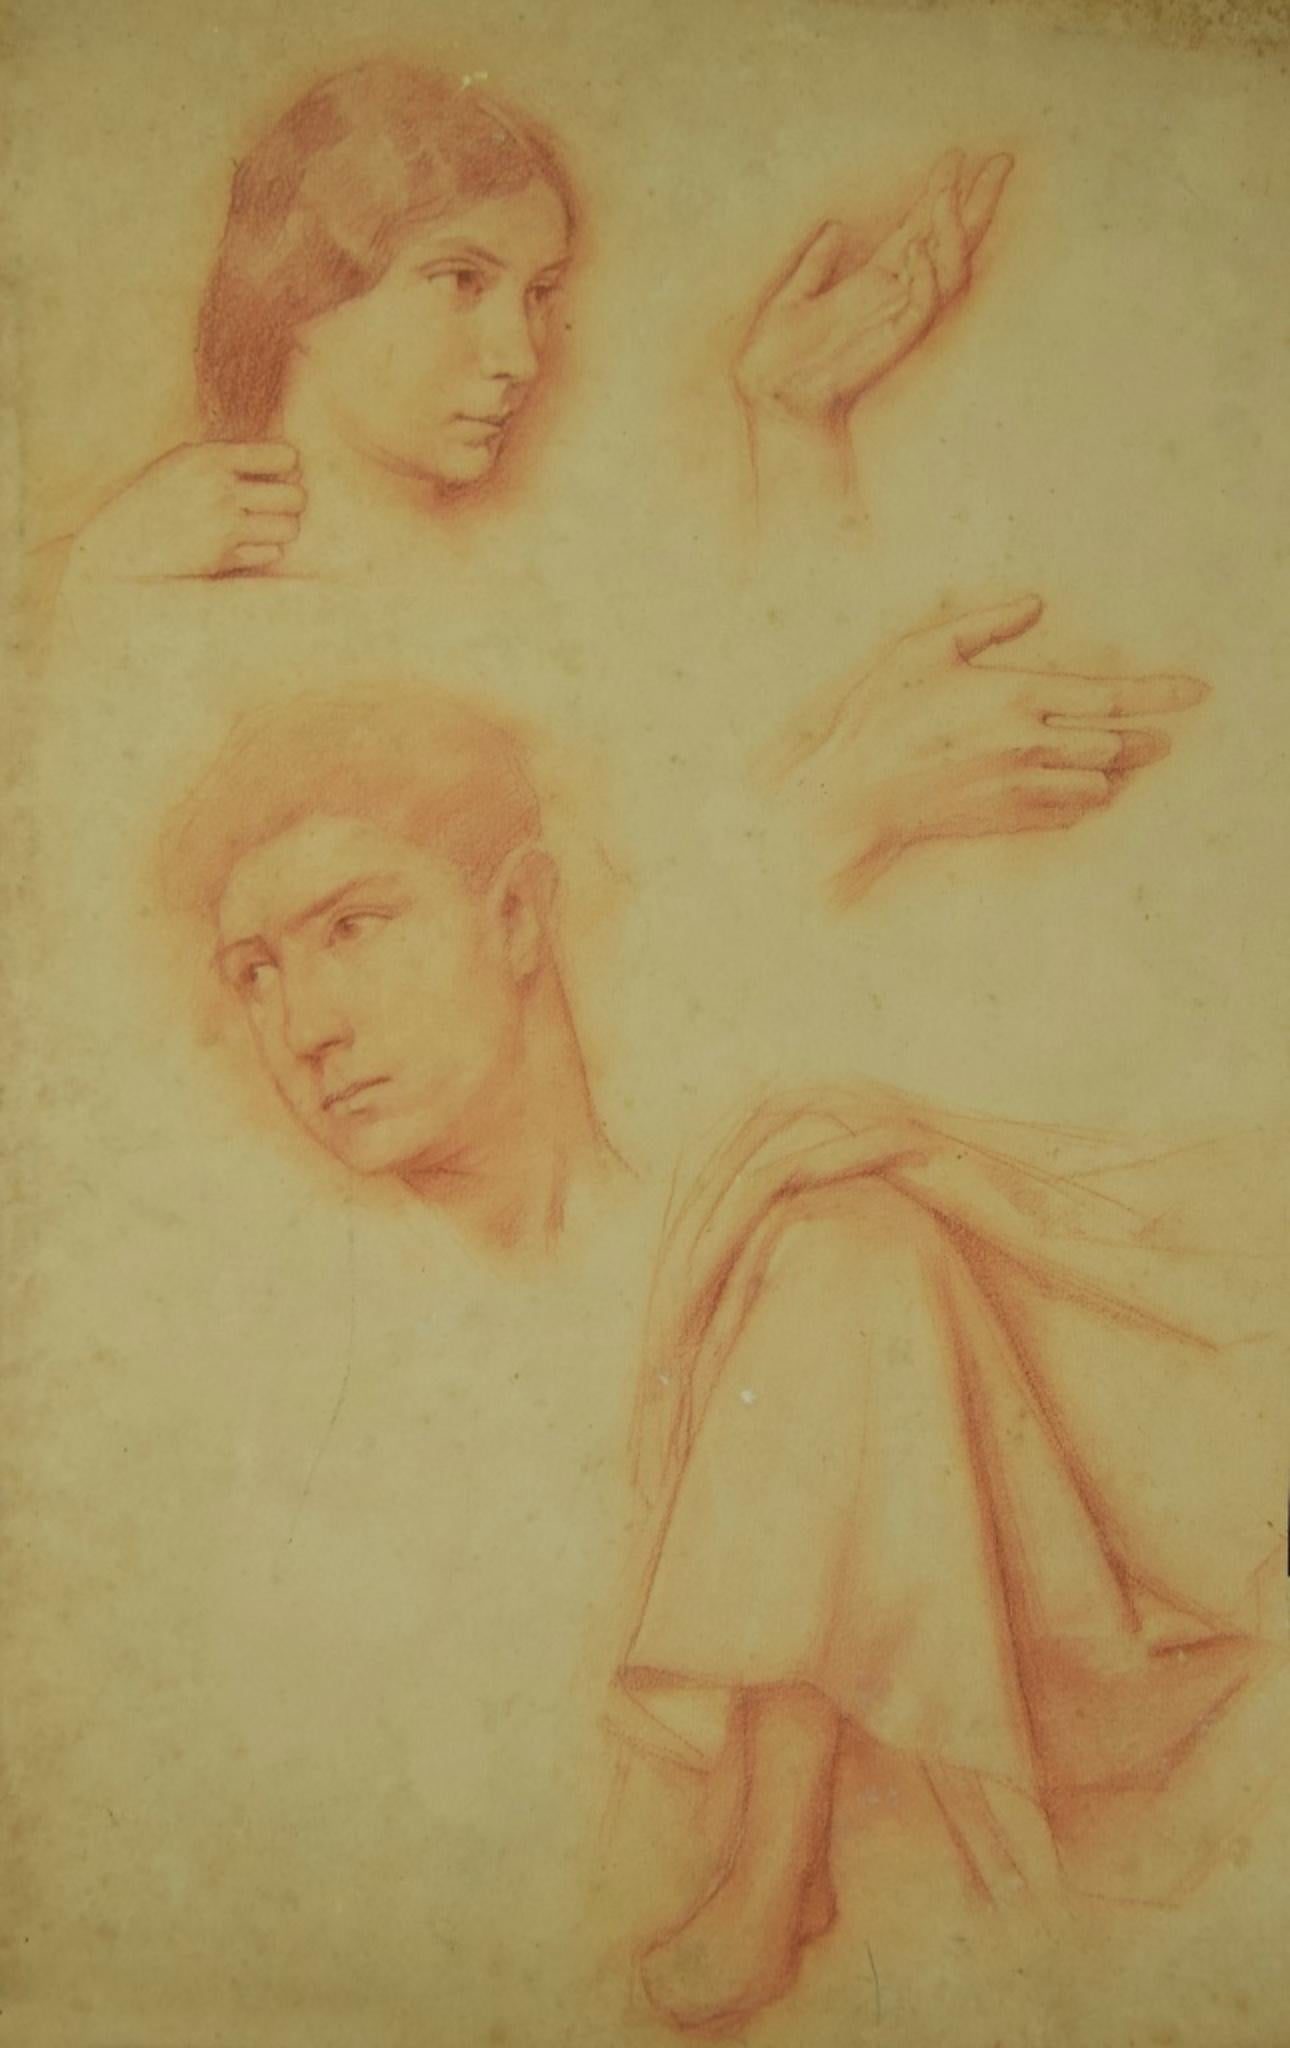 Études anatomiques - dessin original au crayon - XIXe siècle